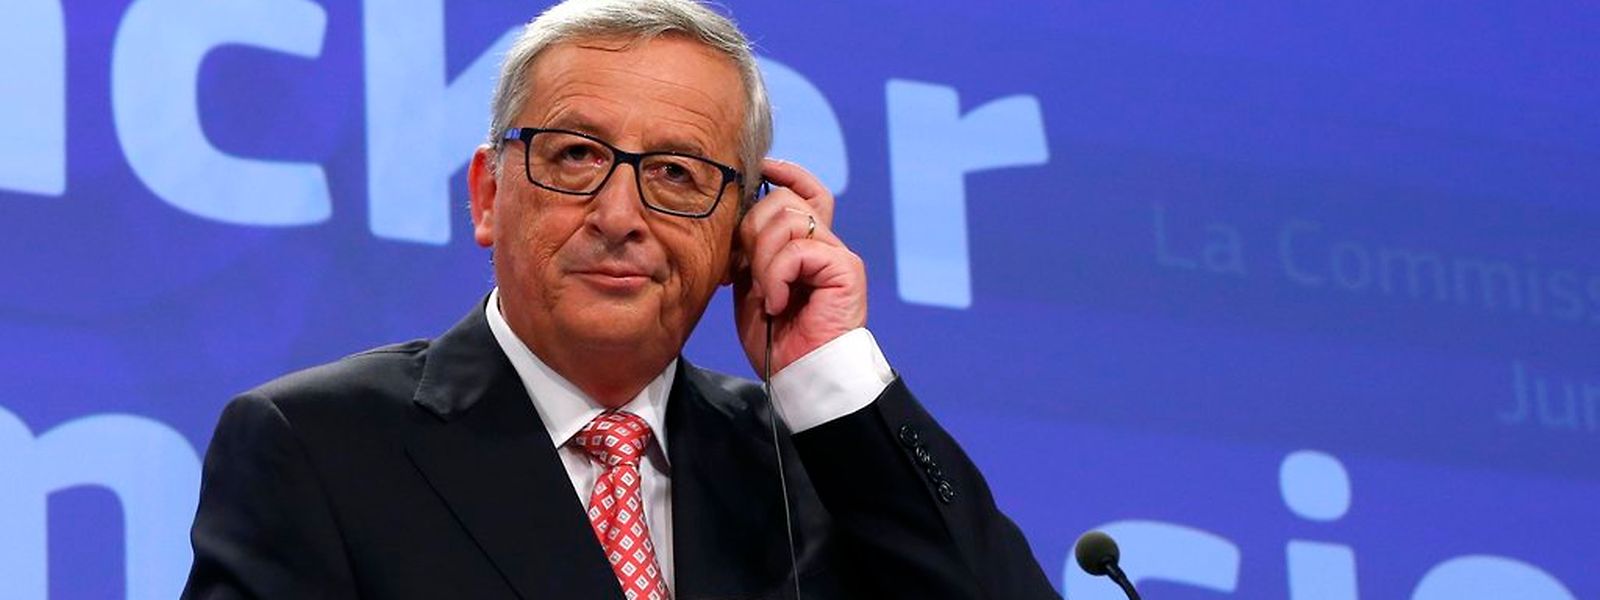 Jean-Claude Juncker versicherte am Mittwoch, er möchte im hohen Alter keine Karriere als Diktator beginnen. Foto: Reuters